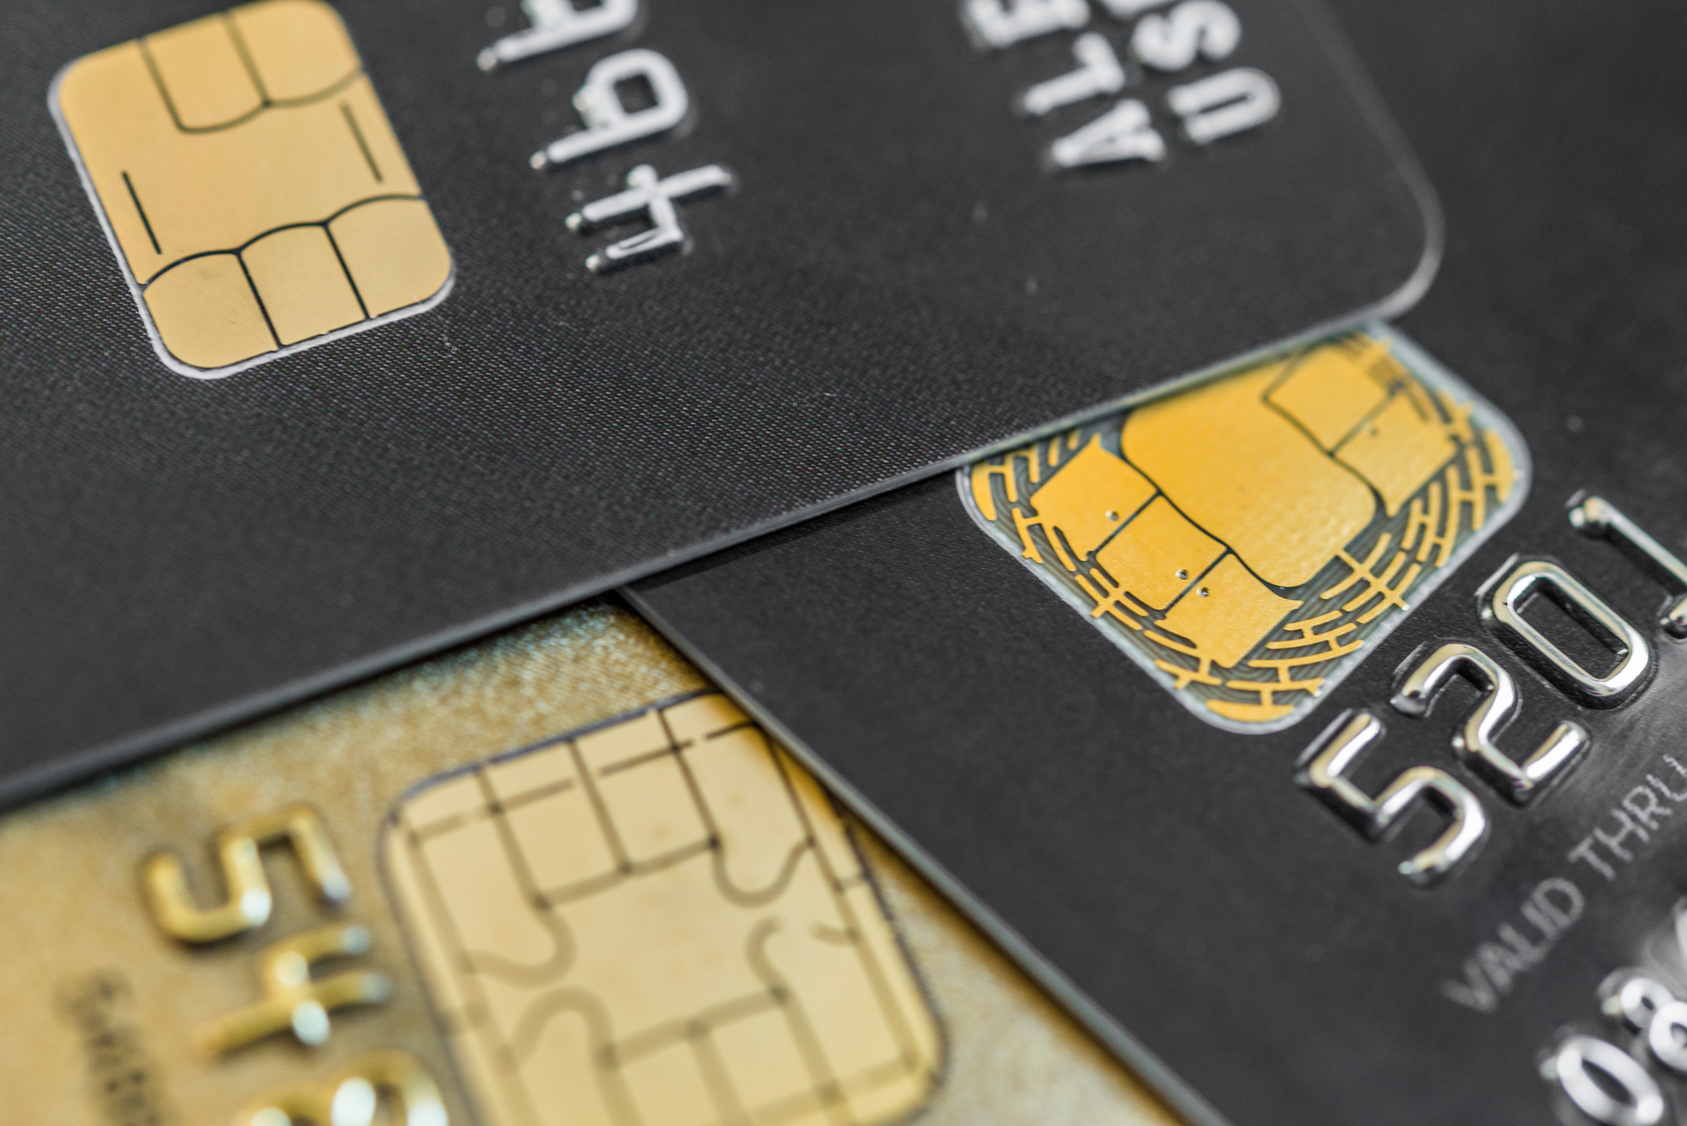 Black Friday e a fraude com cartão de crédito no e-commerce